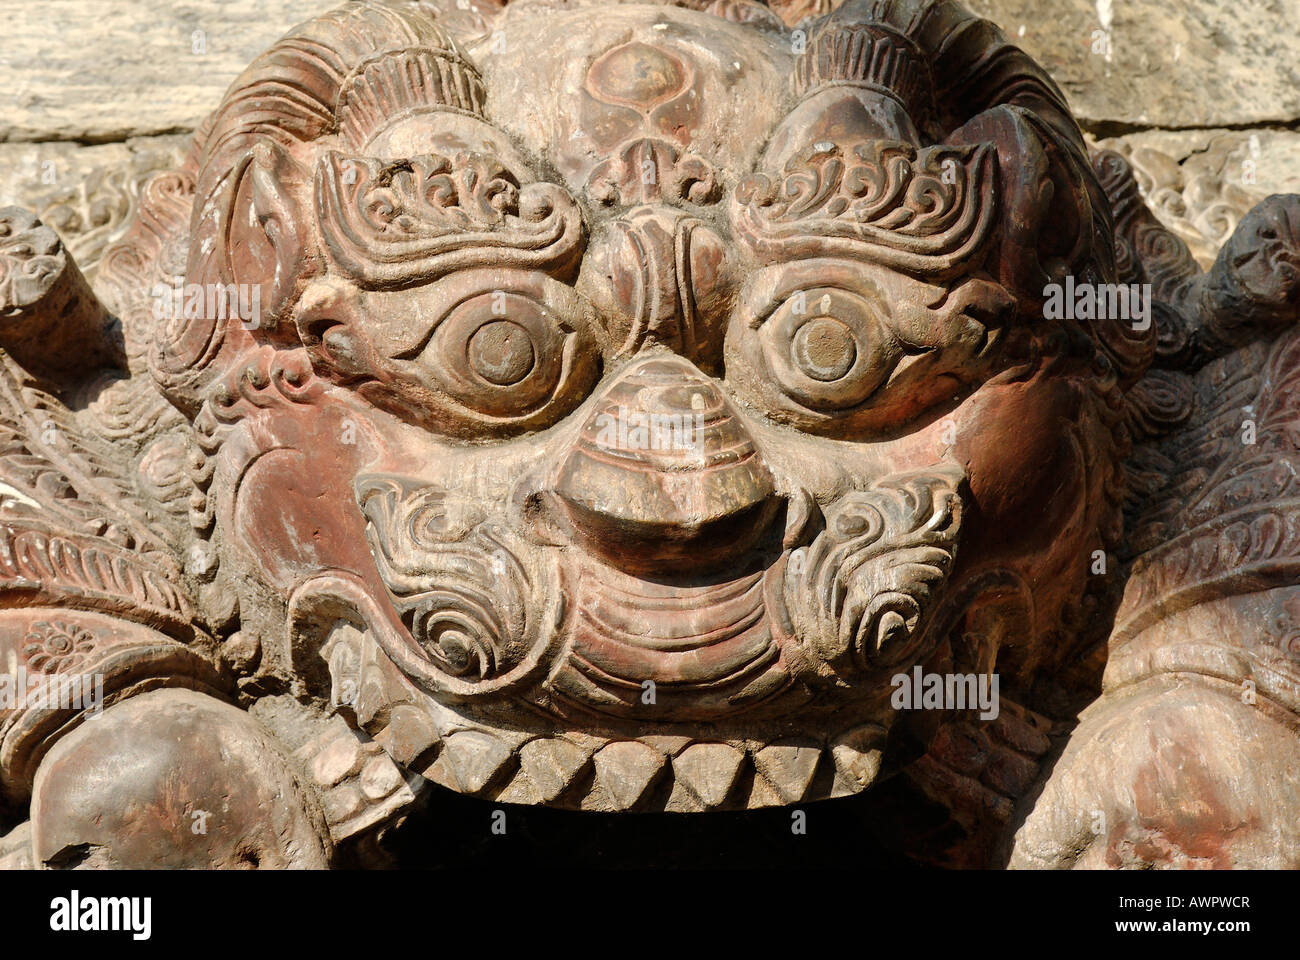 Hinduistic stone sculpture, Ghats of Pashupatinath, Kathmandu, Nepal Stock Photo